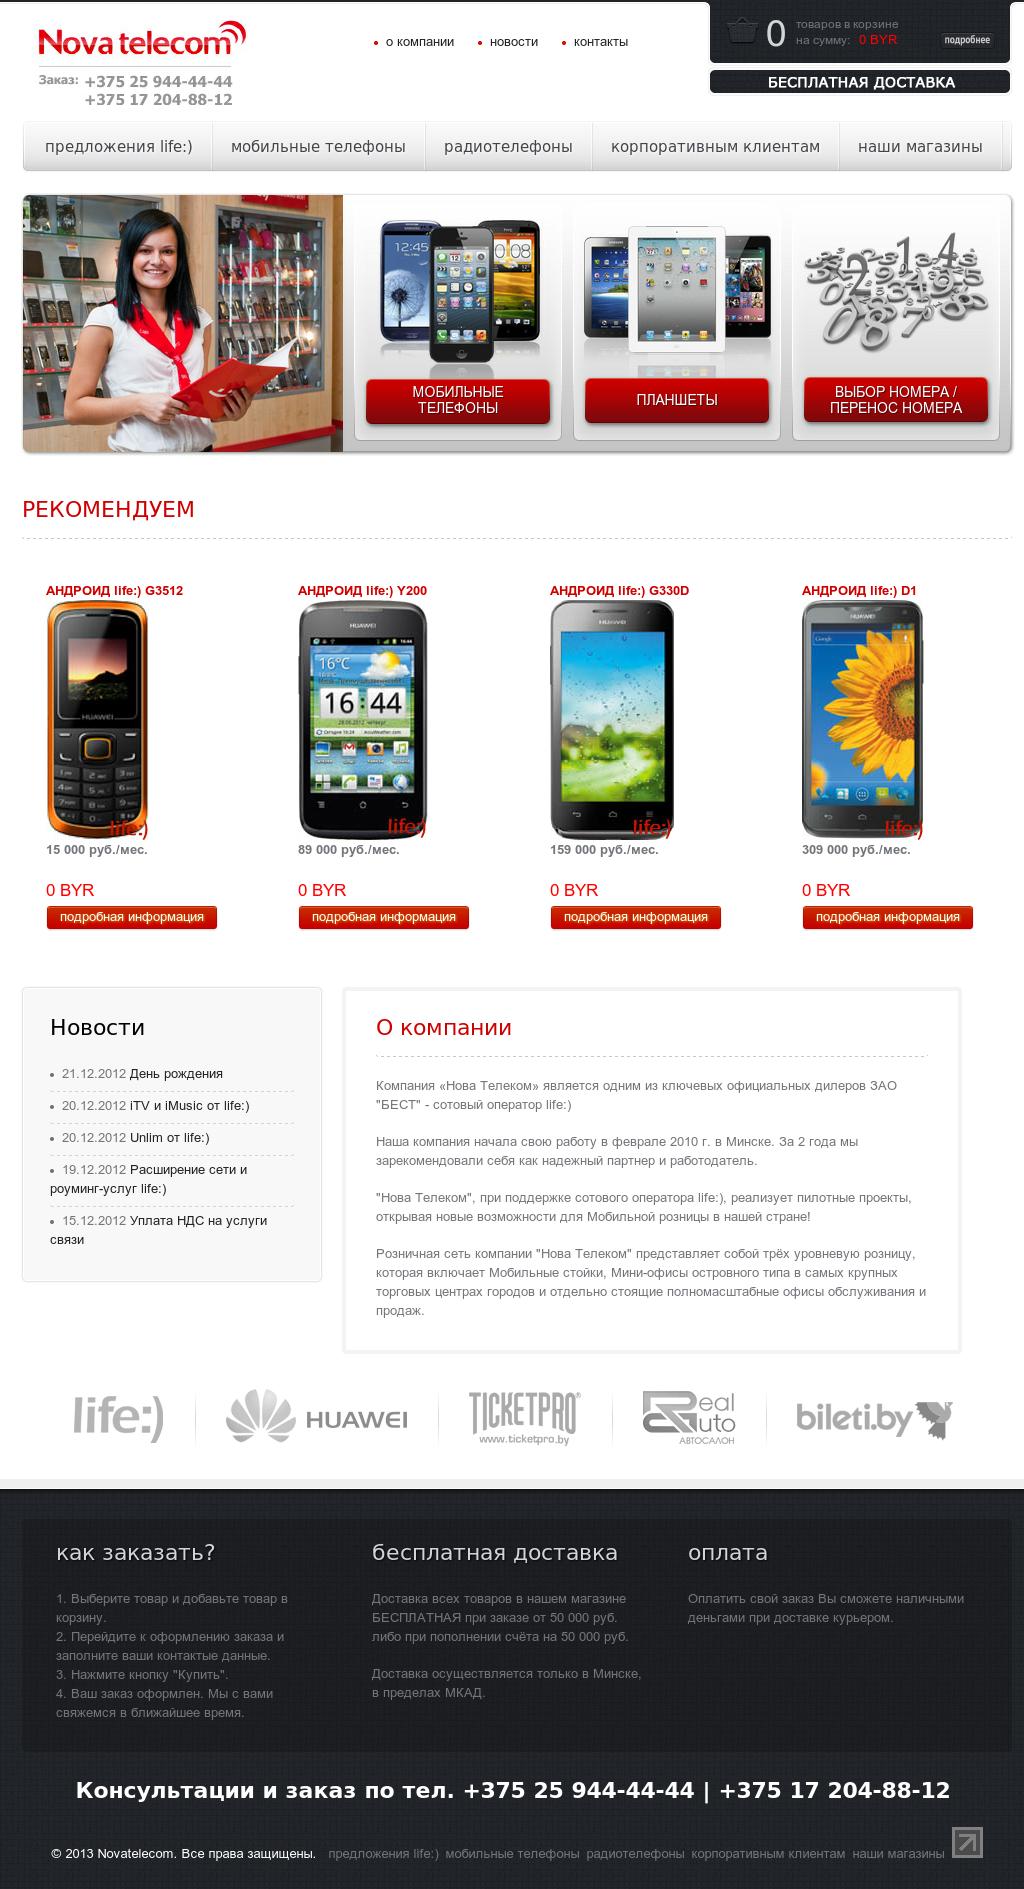 Novatelecom - официальный дилер компании Life